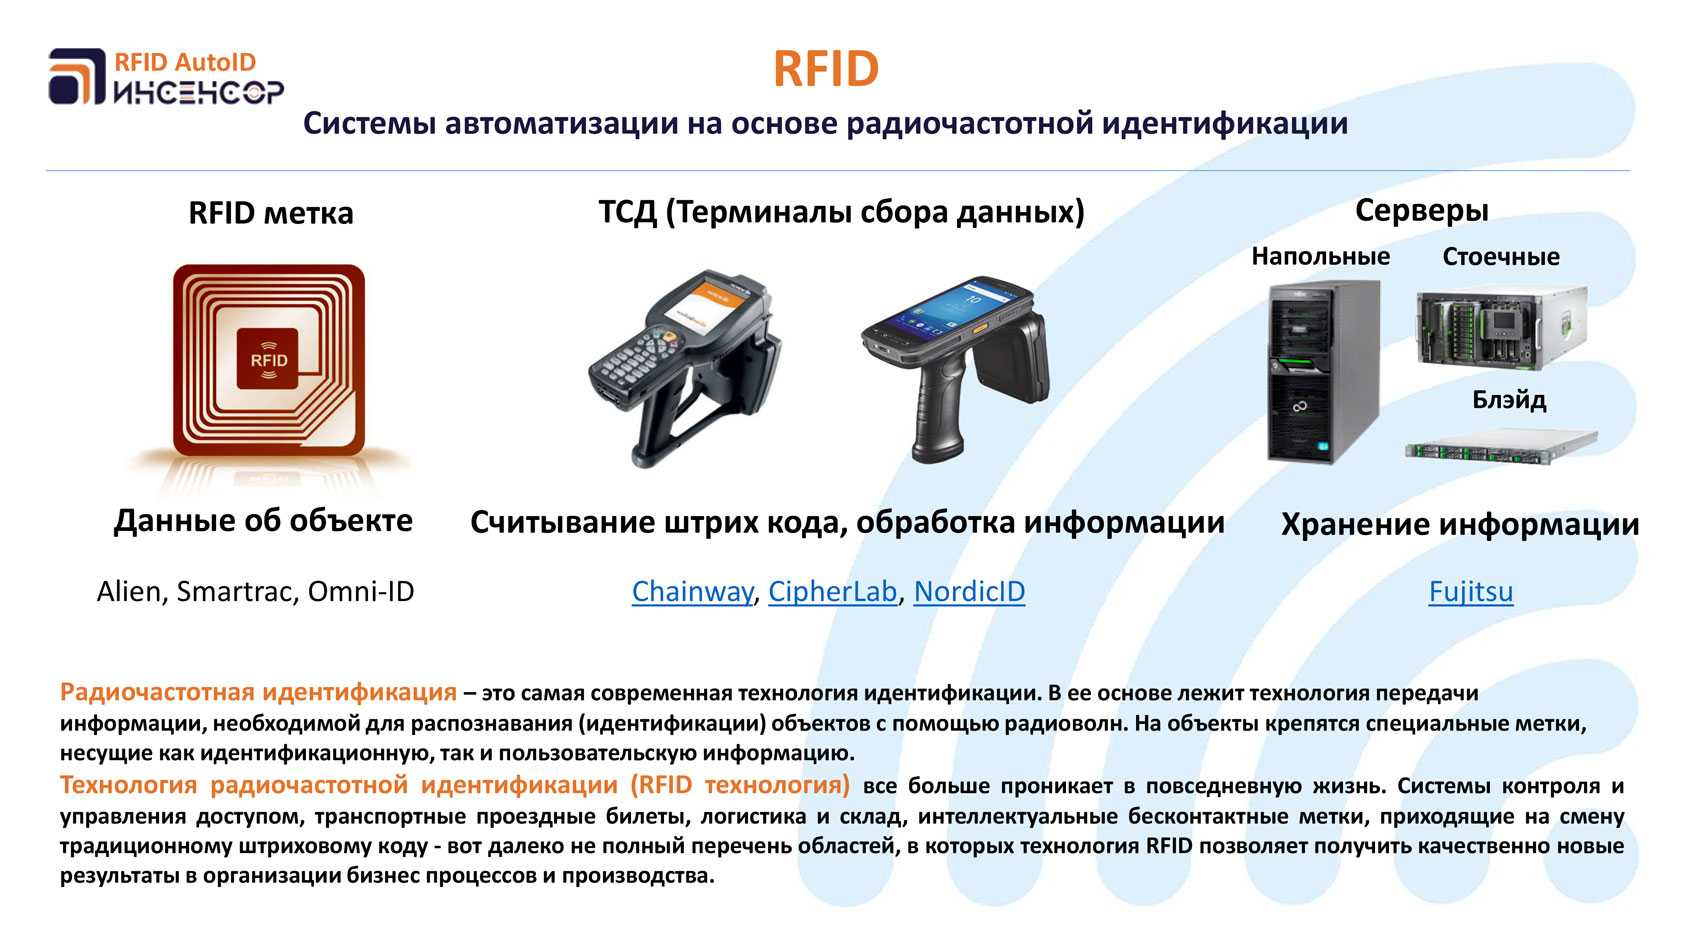 Реалми сканер кодов. Технология радиочастотной идентификации RFID. Система считывания RFID меток. Radio Frequency identification — радиочастотная идентификация). Как работает RFID считыватель.